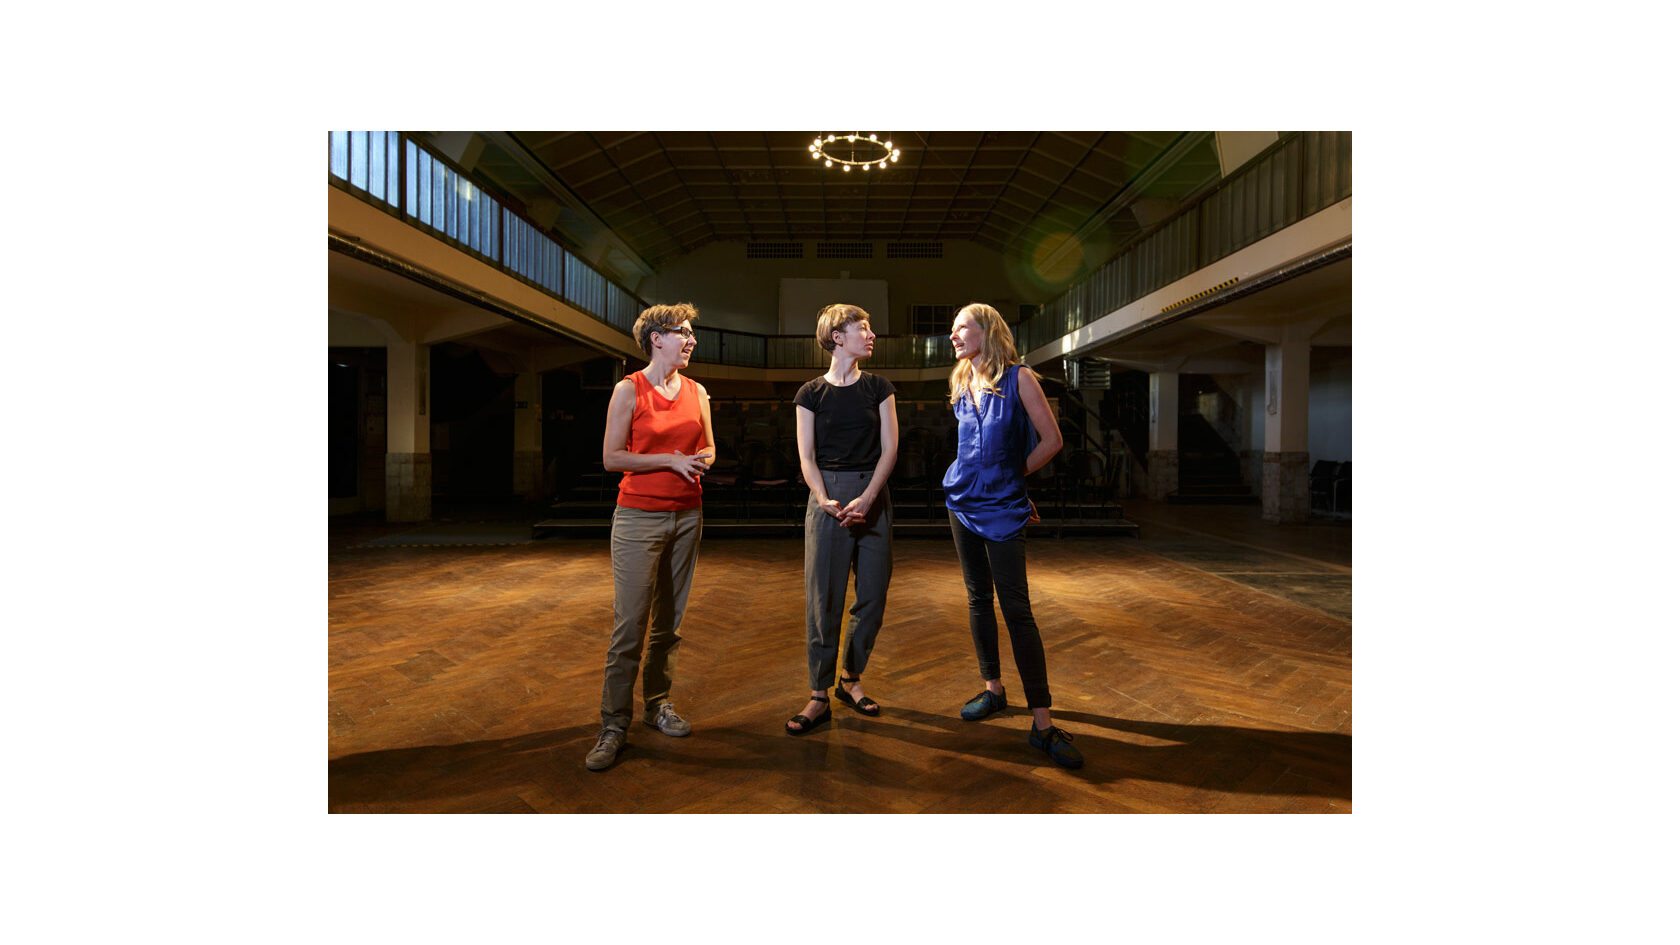 Gruppenfoto der Initiatorinnen des Projekts Polylog Dresden, Barbara Lubich, Anna Till sowie Bettina Lehmann, im Ballsaal des Pieschener Zentralwerks.